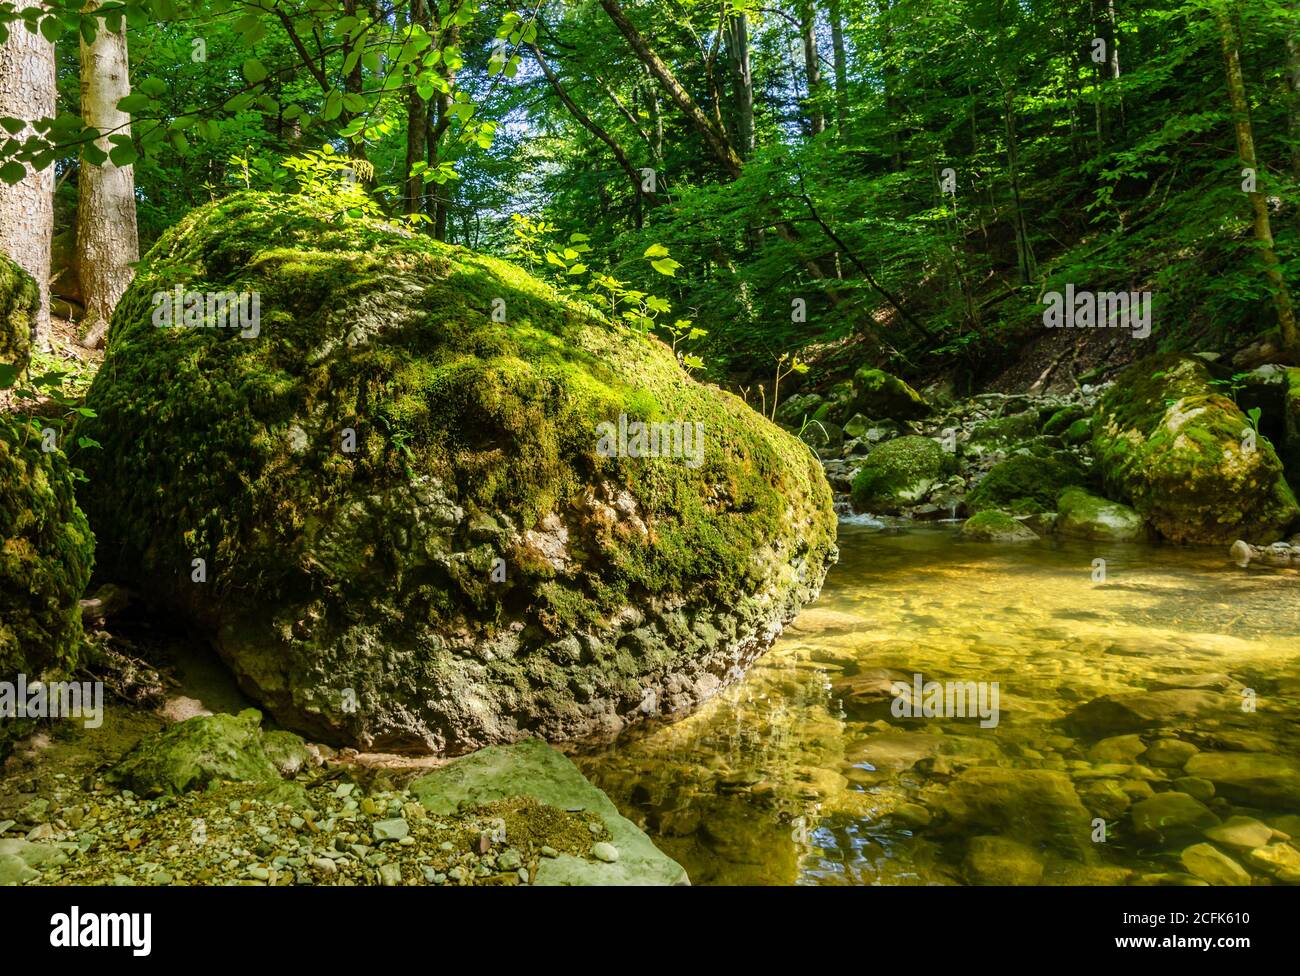 Gran roca a la luz del sol, sobrecrecido con musgo verde, en el arroyo de un bosque natural. Gran piedra en el borde de una cama de arroyo en un soleado día de verano Foto de stock